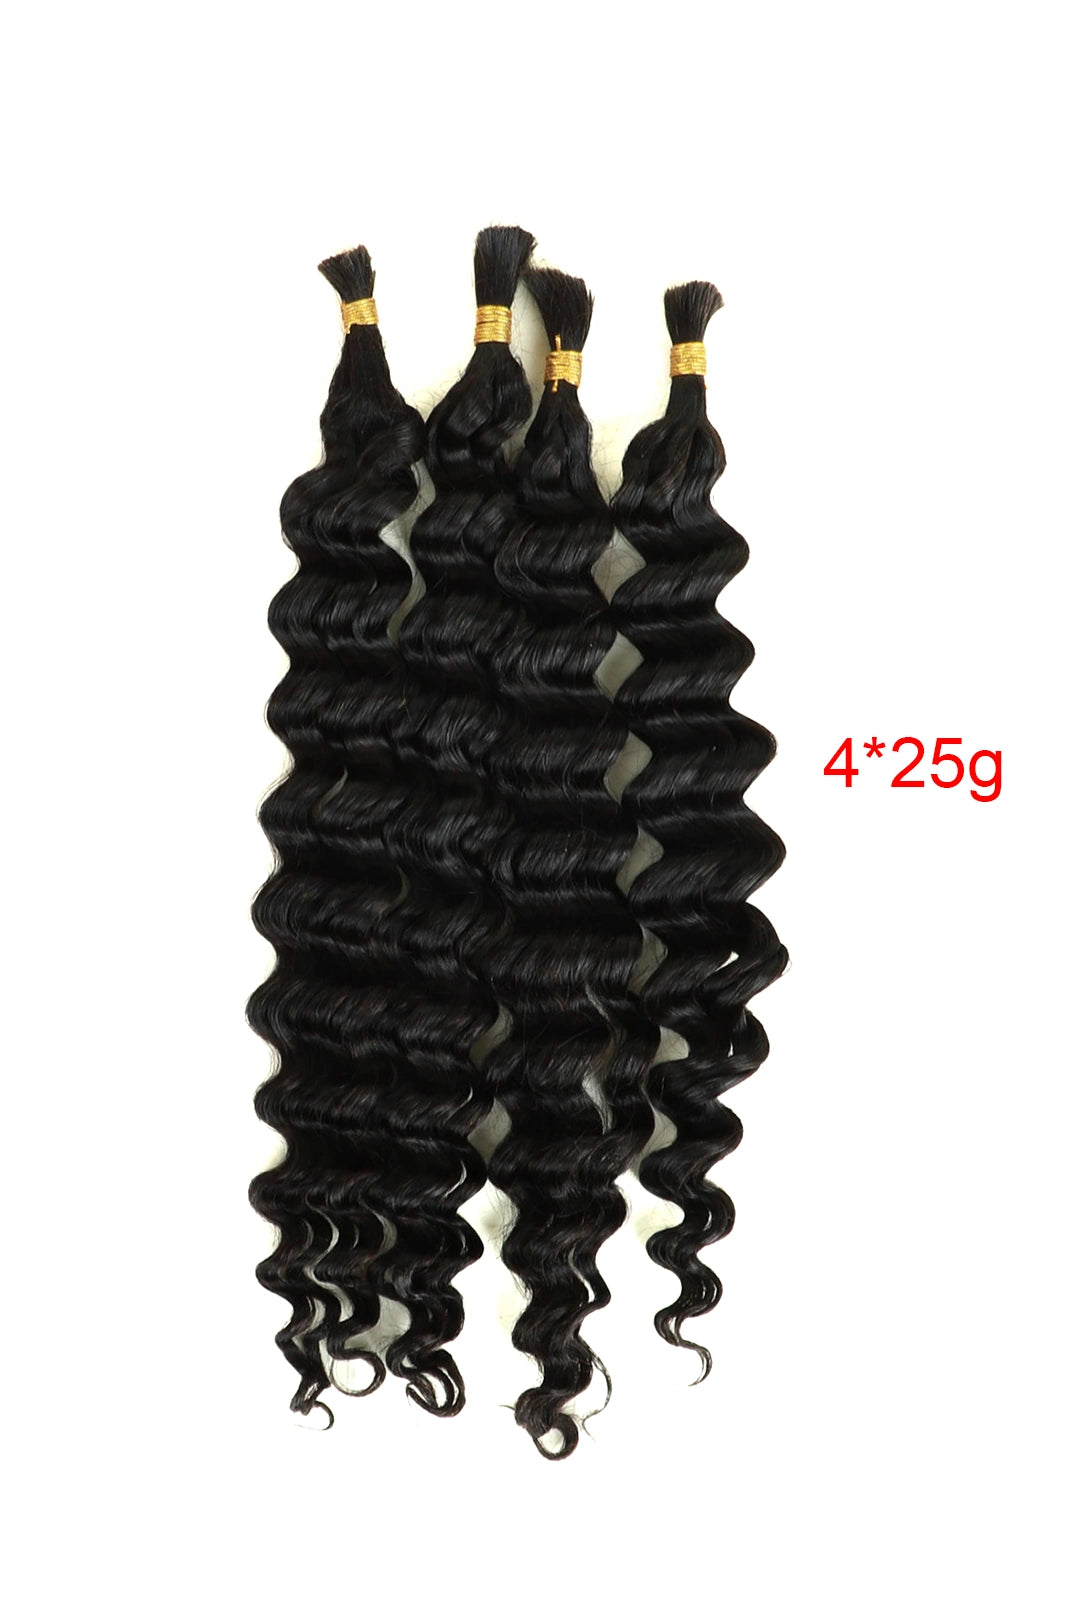 Deep Wave Bulk Human Hair For Braiding Natural Black 25g